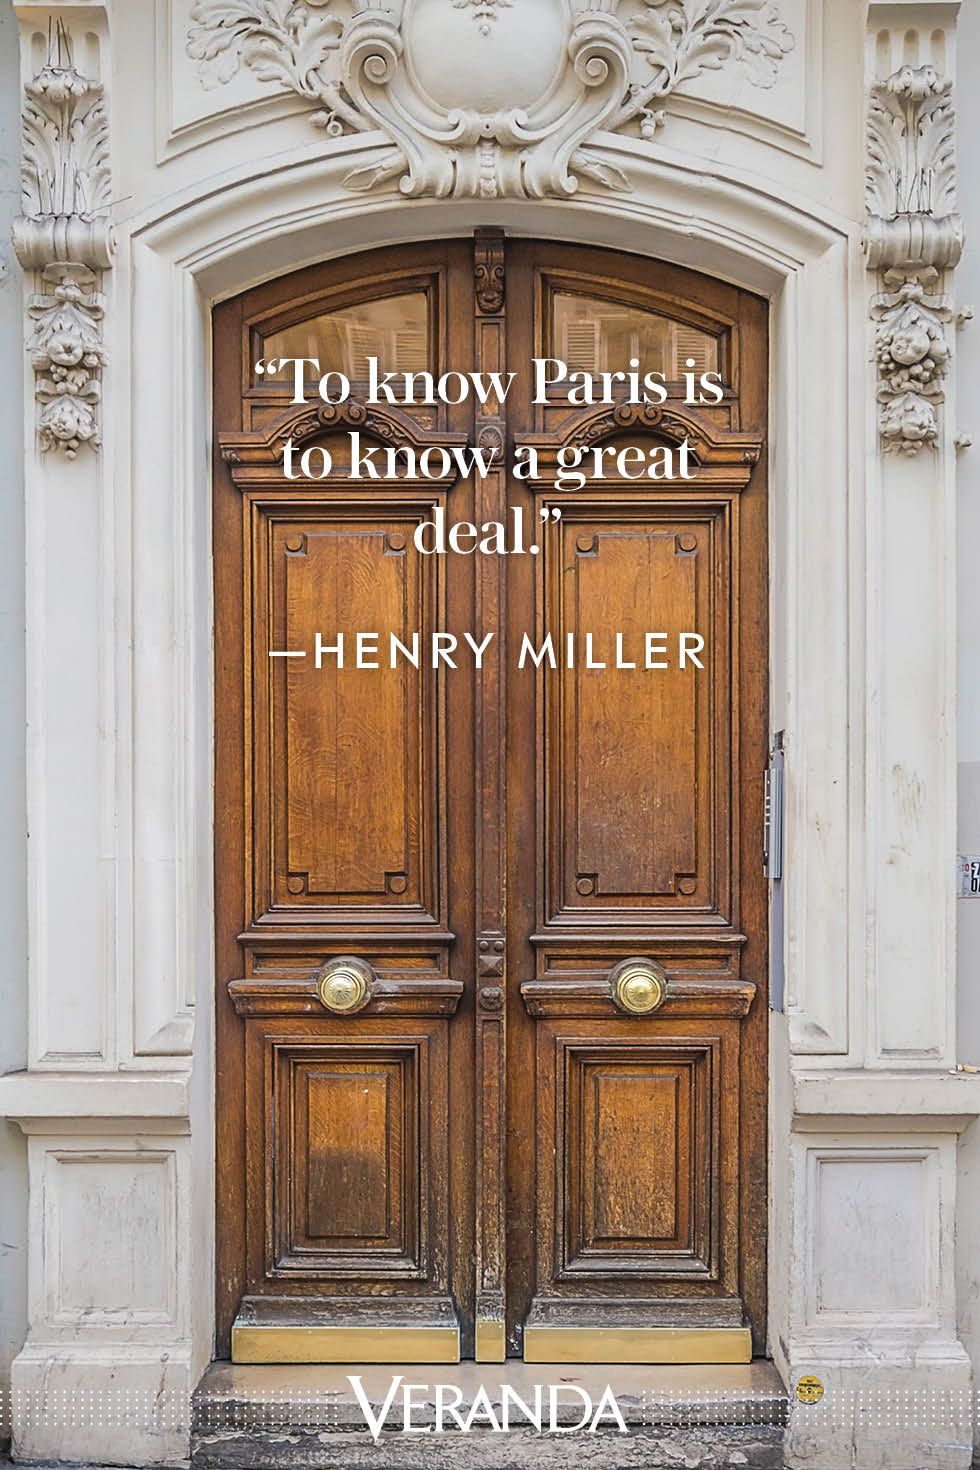 Veranda quotes about Paris Henry Miller